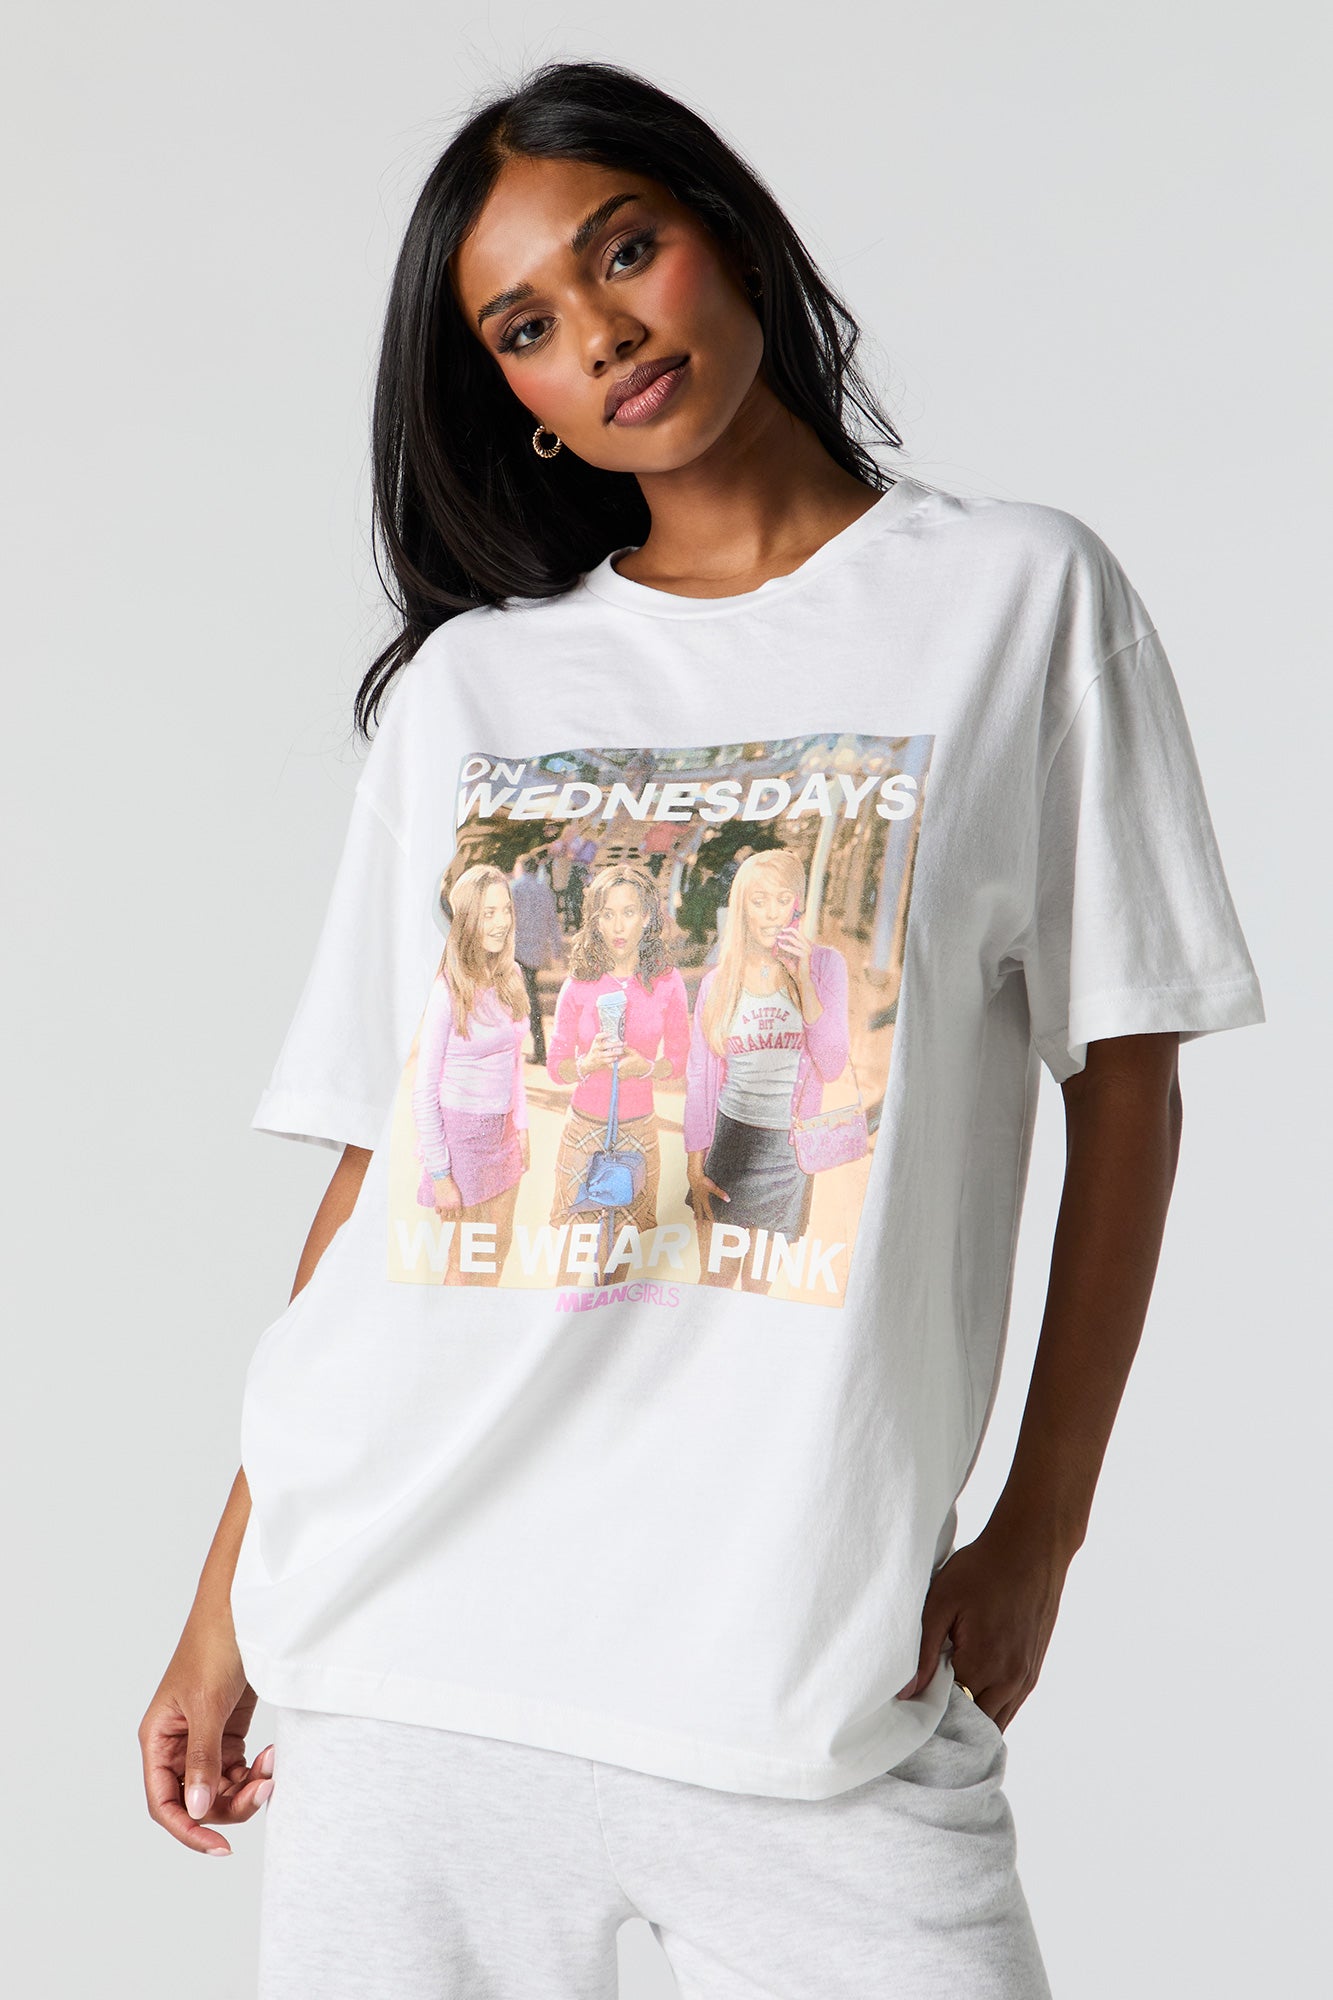 Mean Girls Graphic Boyfriend T-Shirt